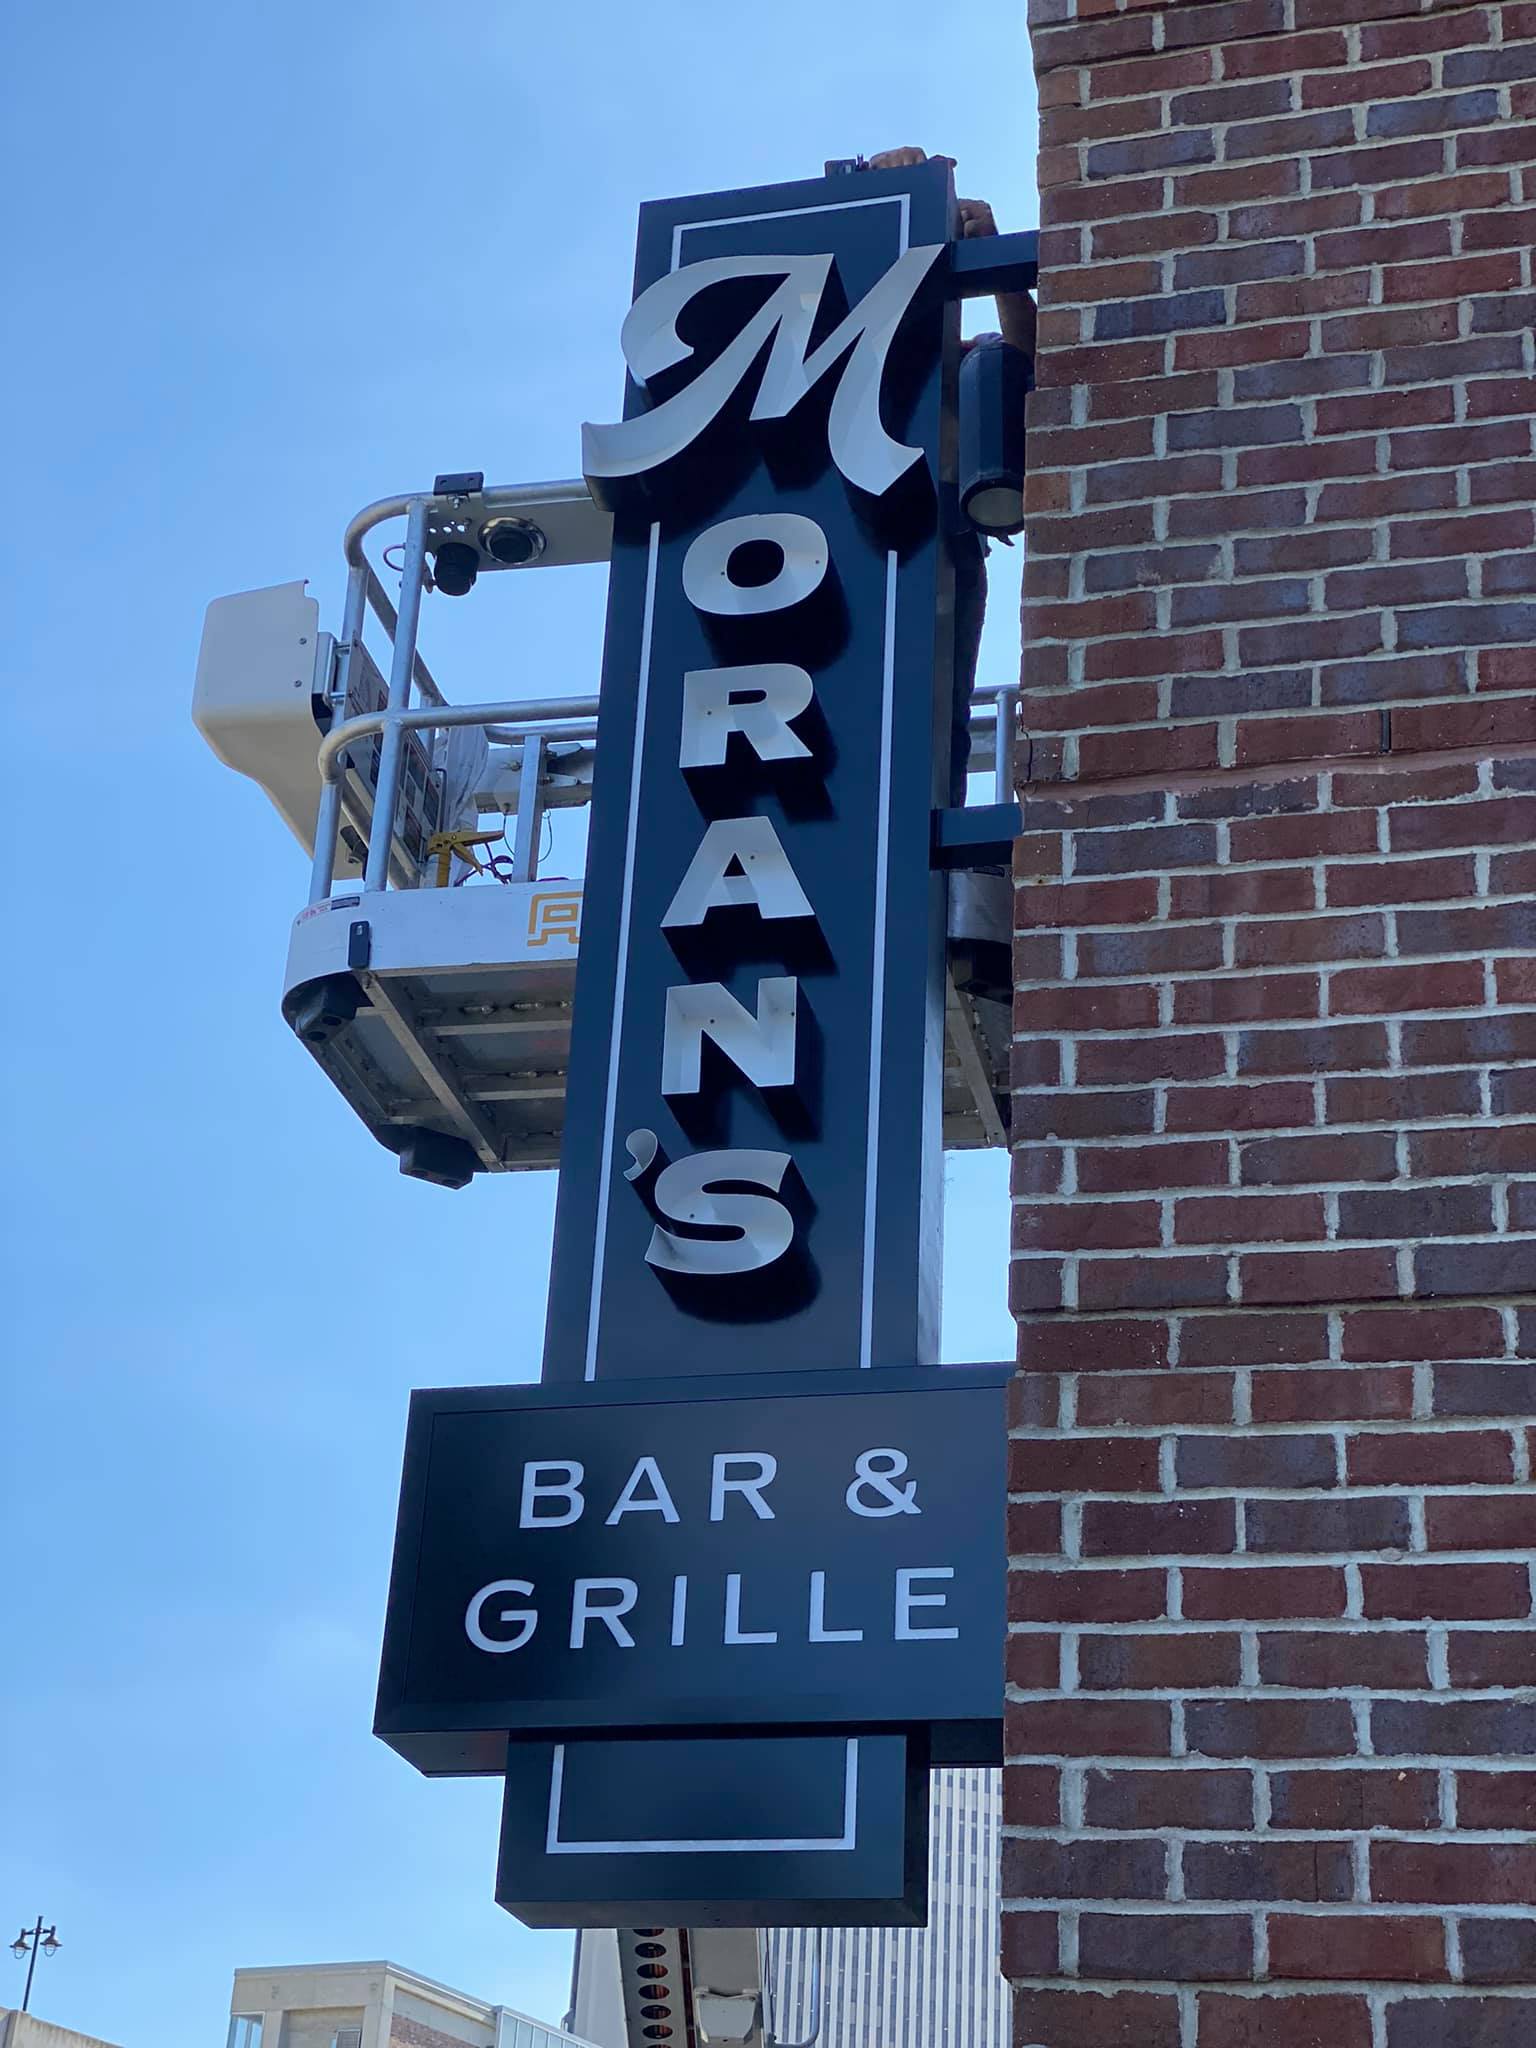 Morans Bar & Grille